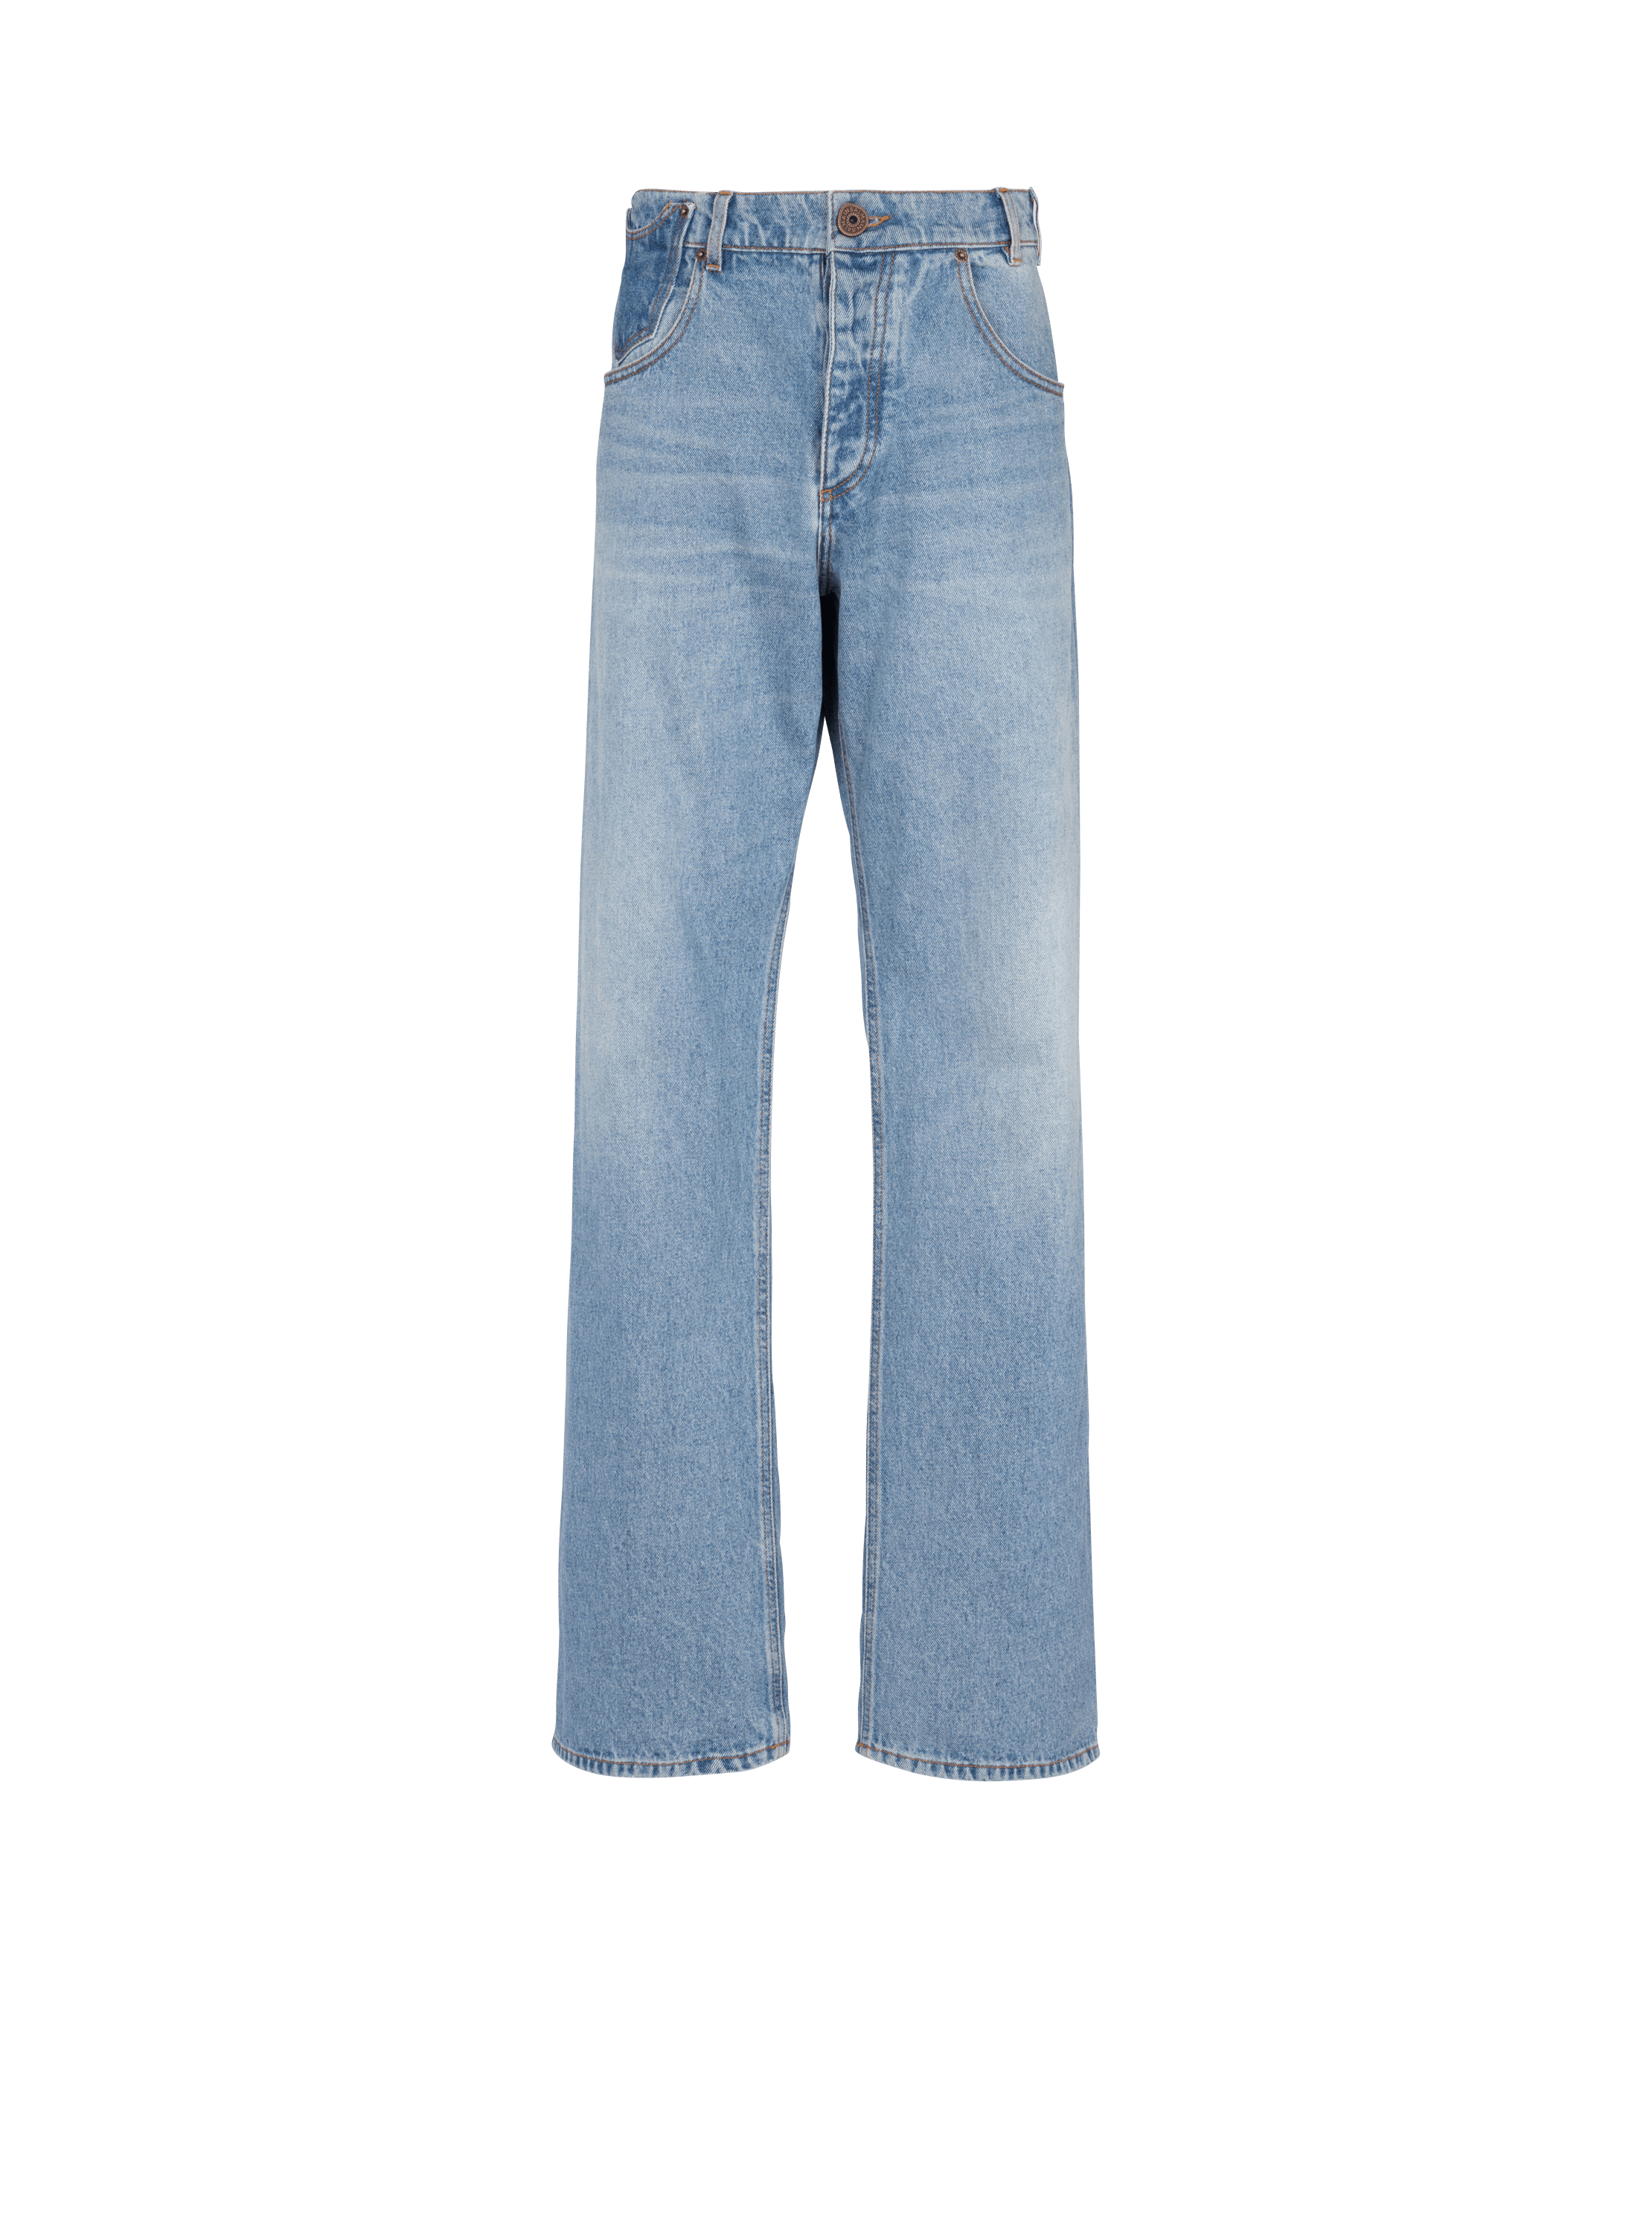 Jeans in contrast-effect denim, blue, hi-res